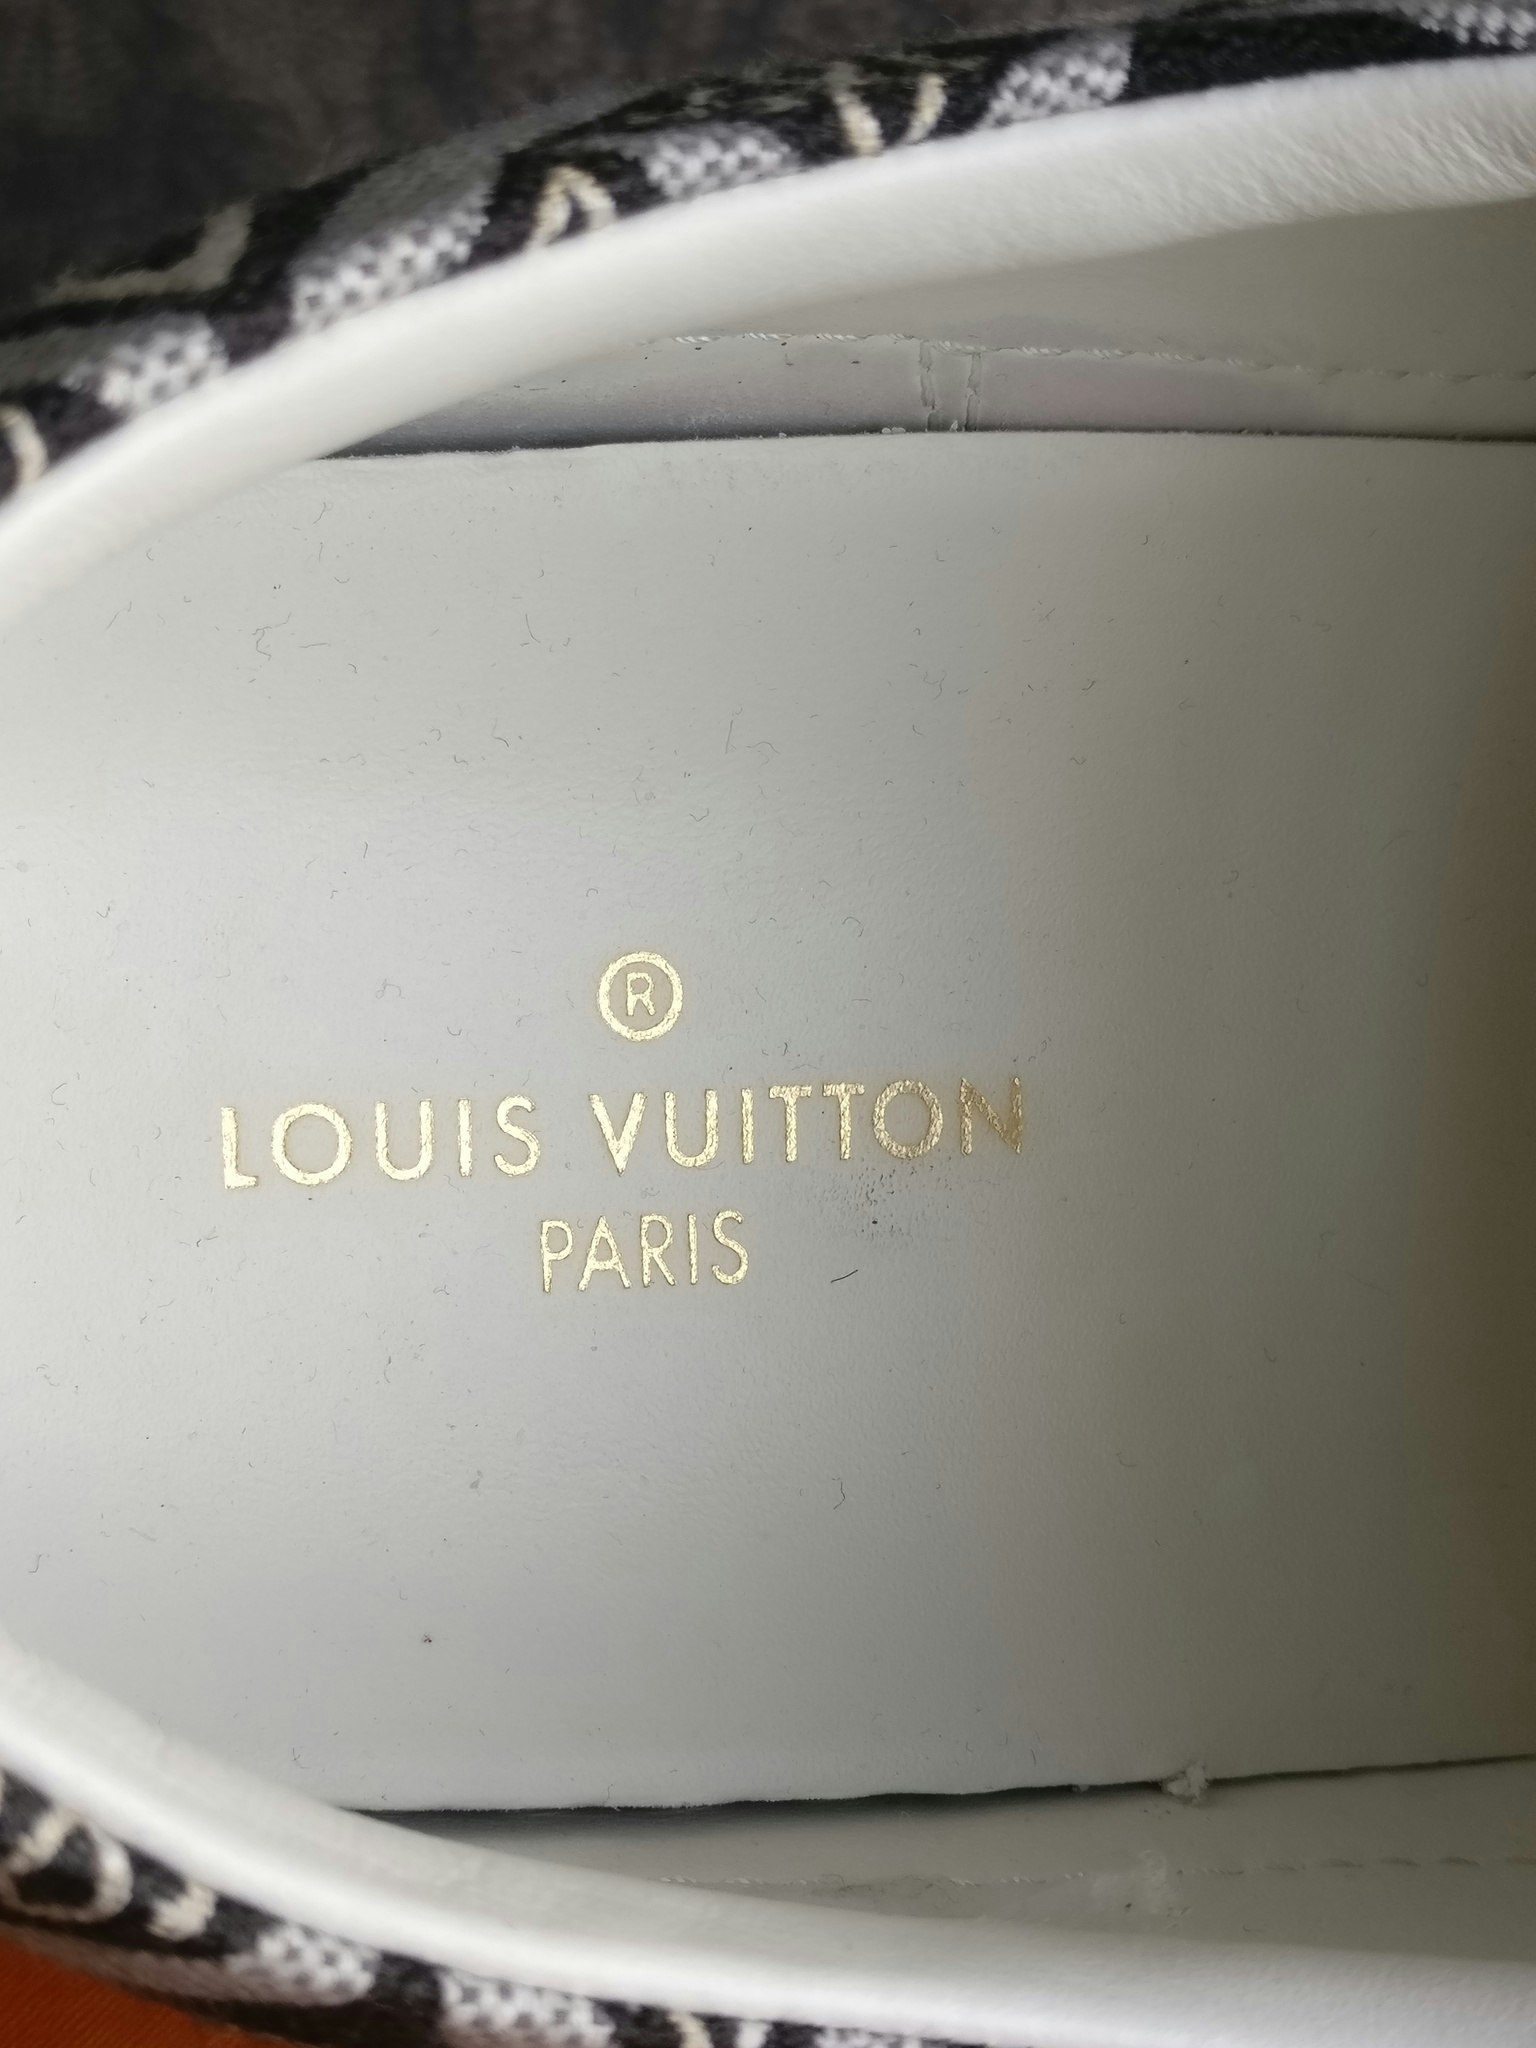 LOUIS VUITTON Jacquard Since 1854 Stellar Sneakers 37.5 Bordeaux 954347